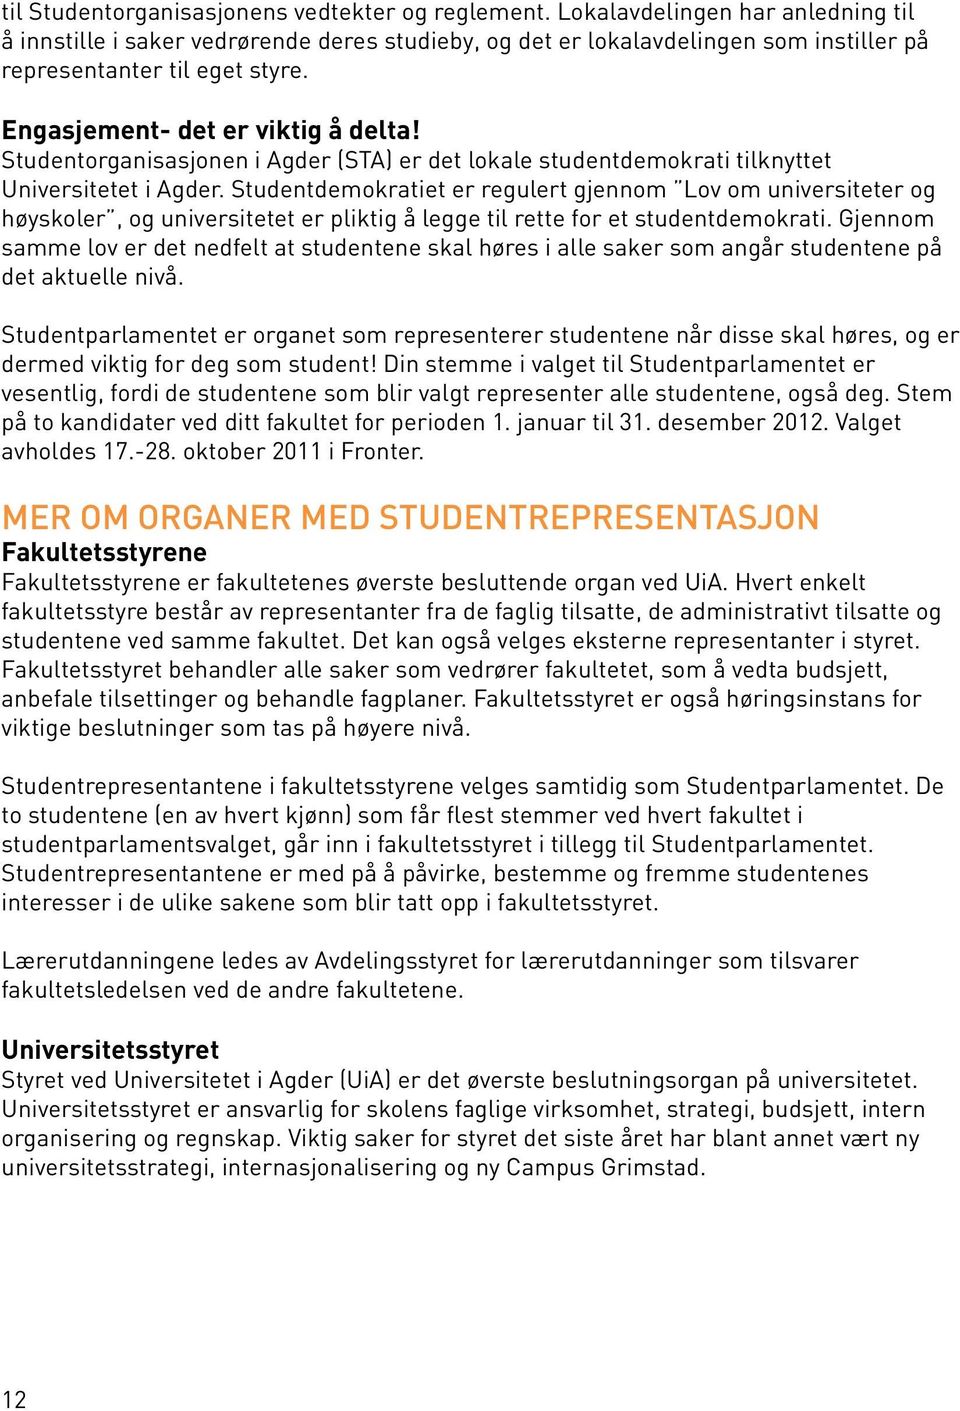 Studentorganisasjonen i Agder (STA) er det lokale studentdemokrati tilknyttet Universitetet i Agder.